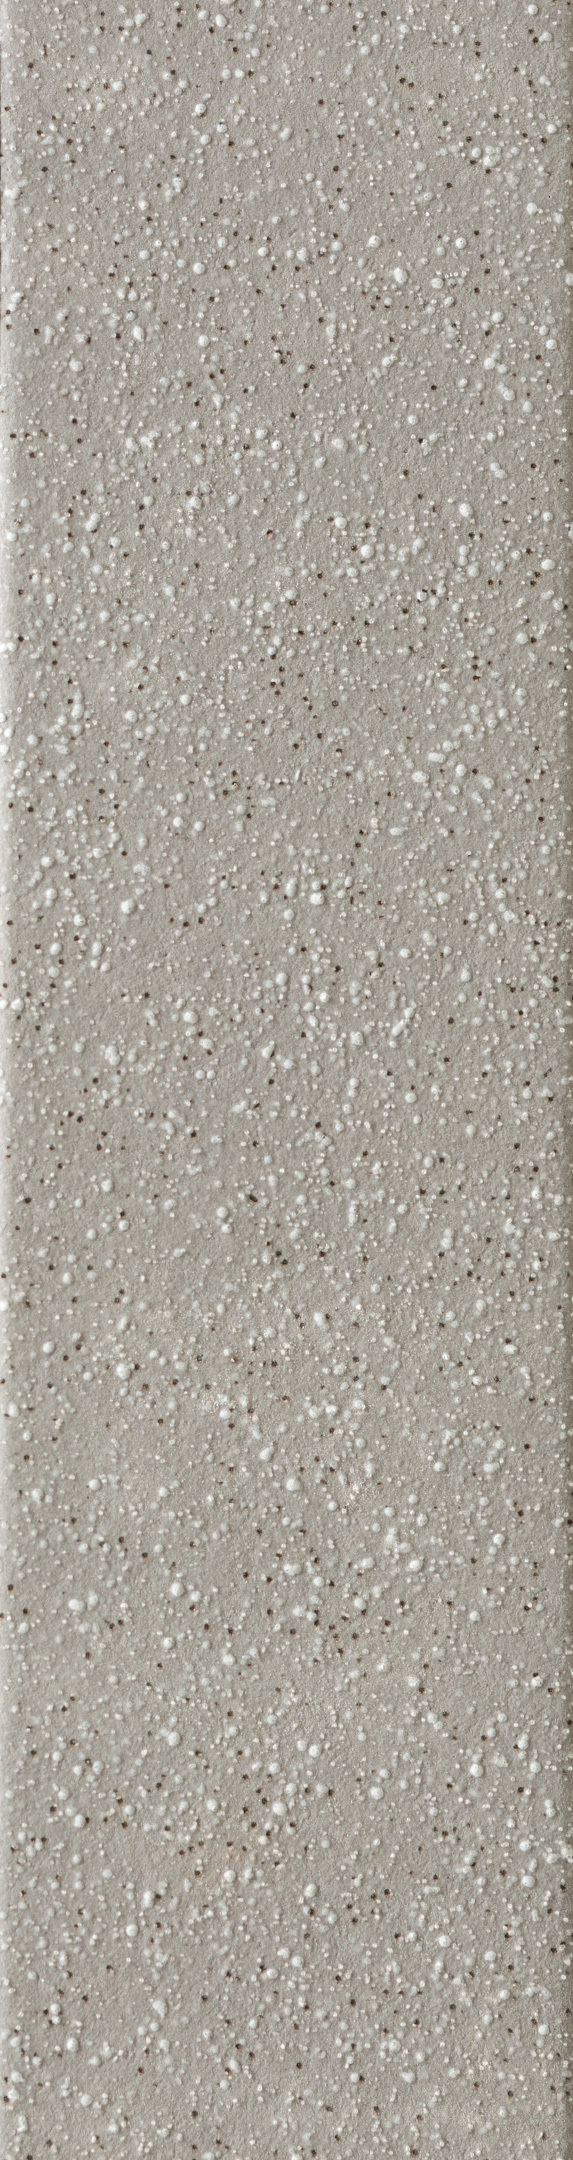 фото Клинкерная плитка керамин мичиган 1 серая 24,5х6,5 см (34 шт.=0,54 кв.м)